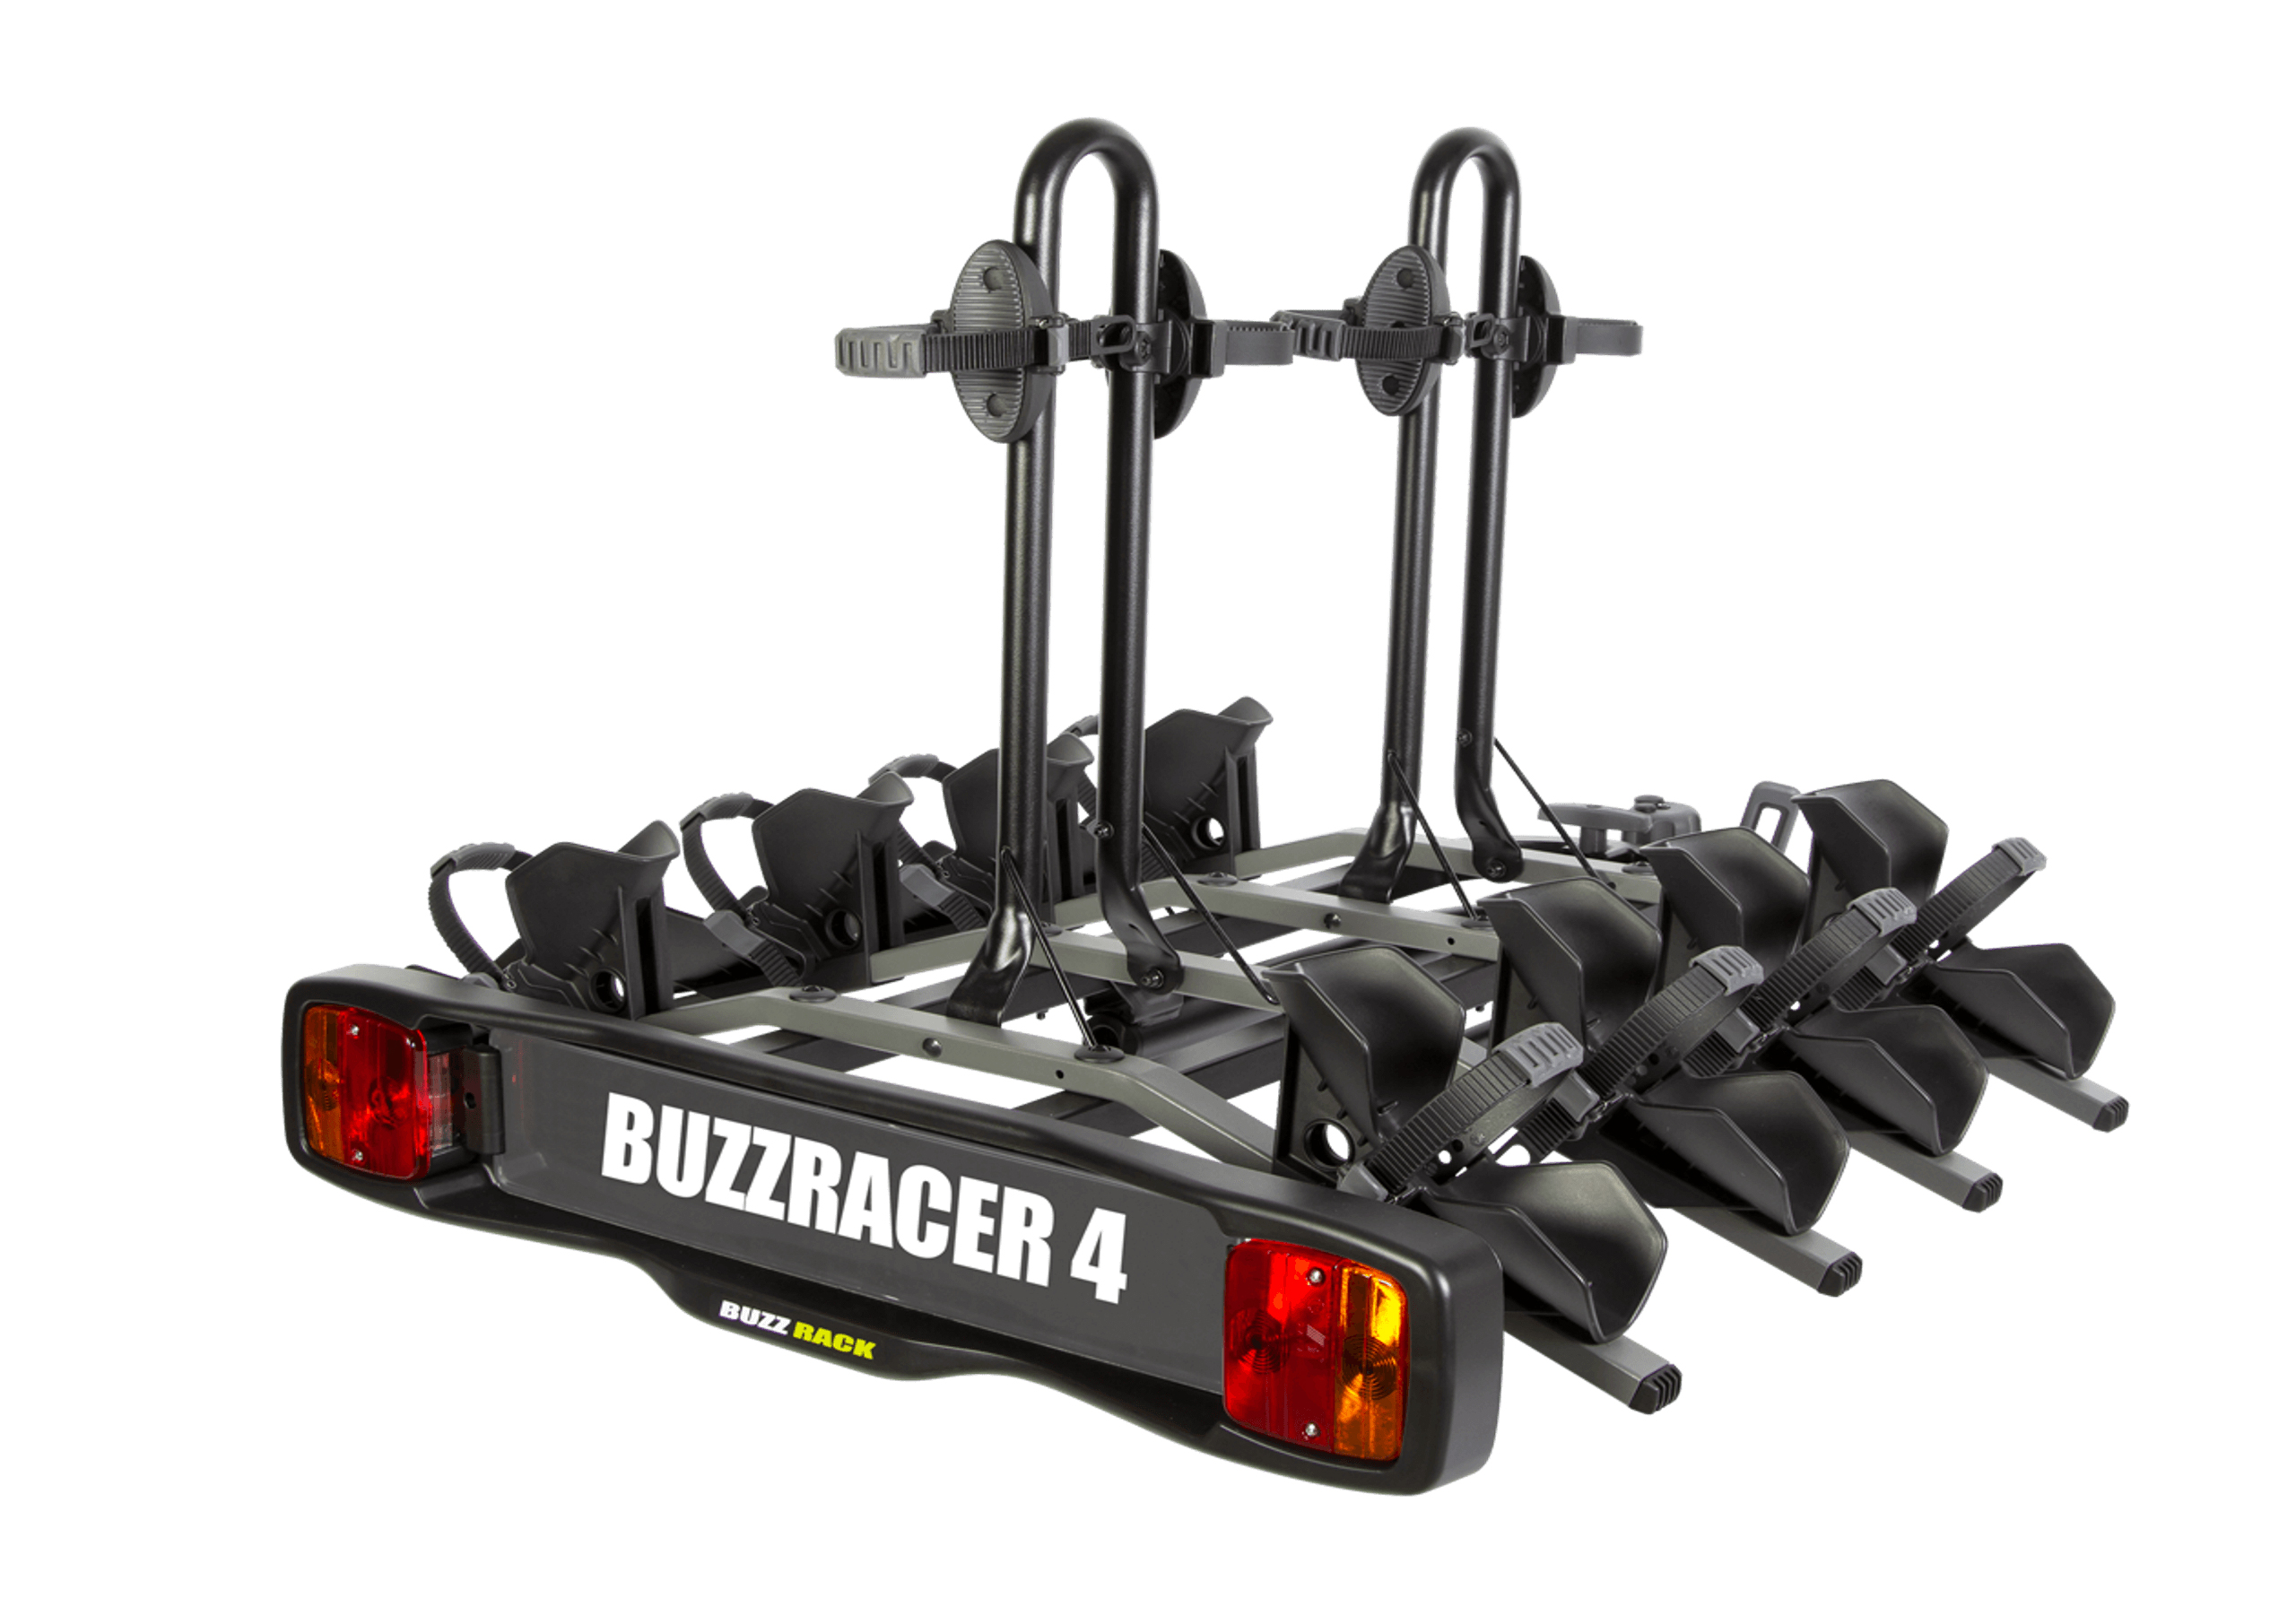 BUZZ RACK:BUZZ RACK BuzzRacer 4 bike wheel support rack no. BRP334